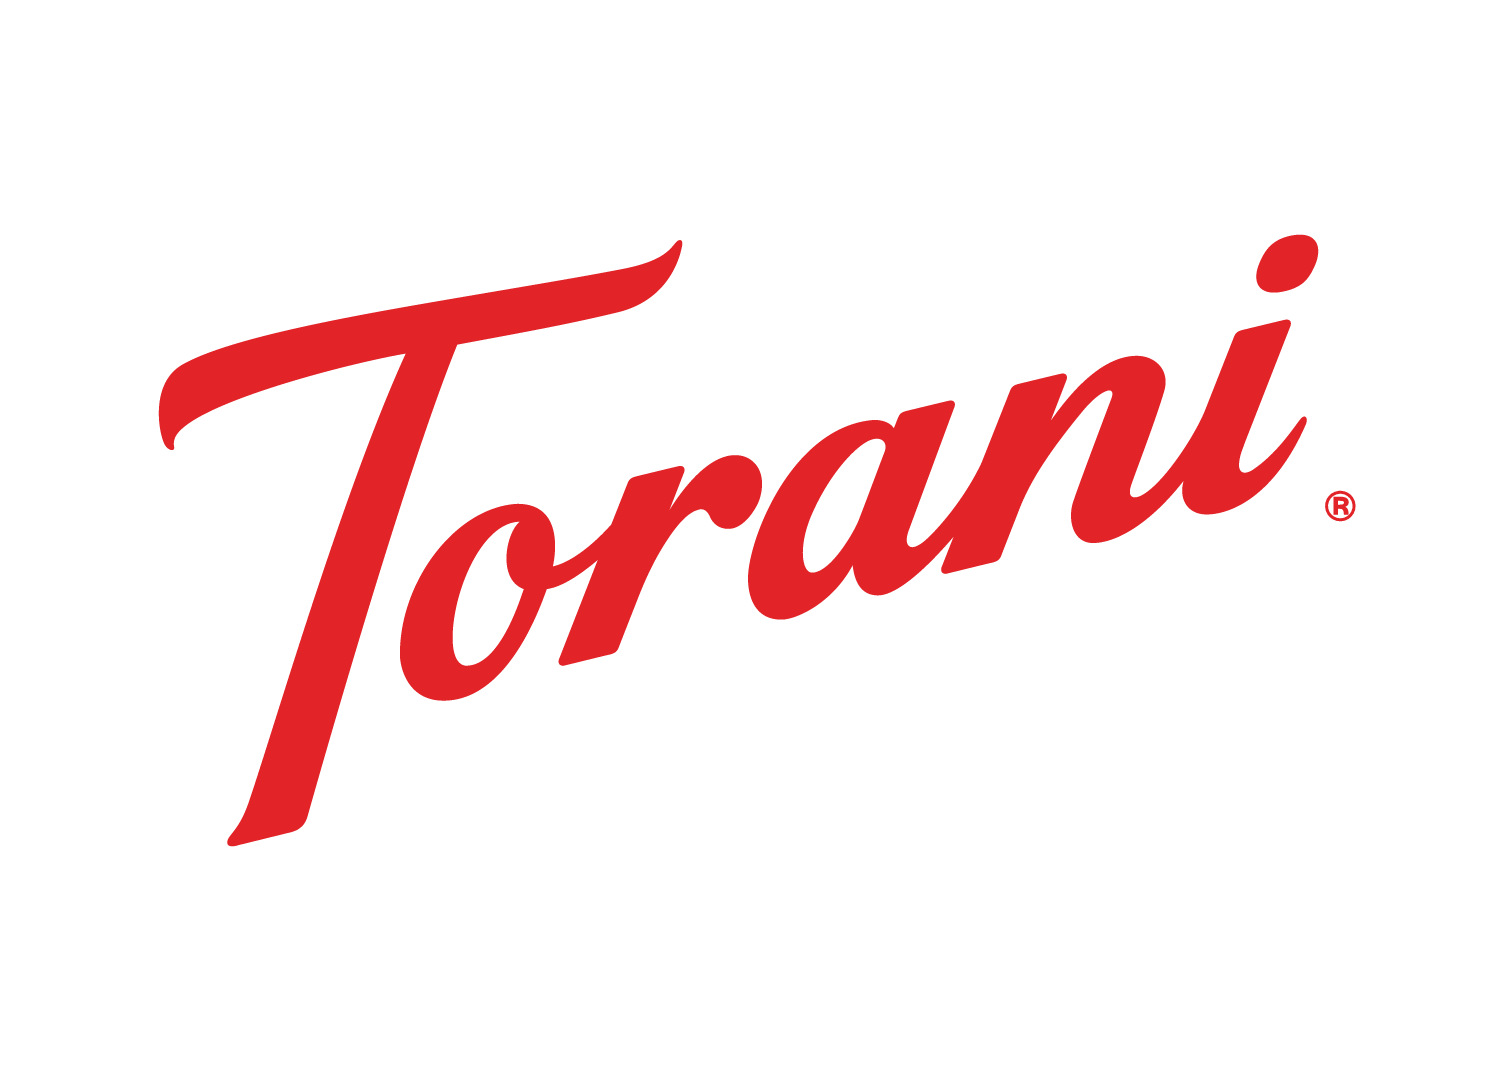 Torani Logo